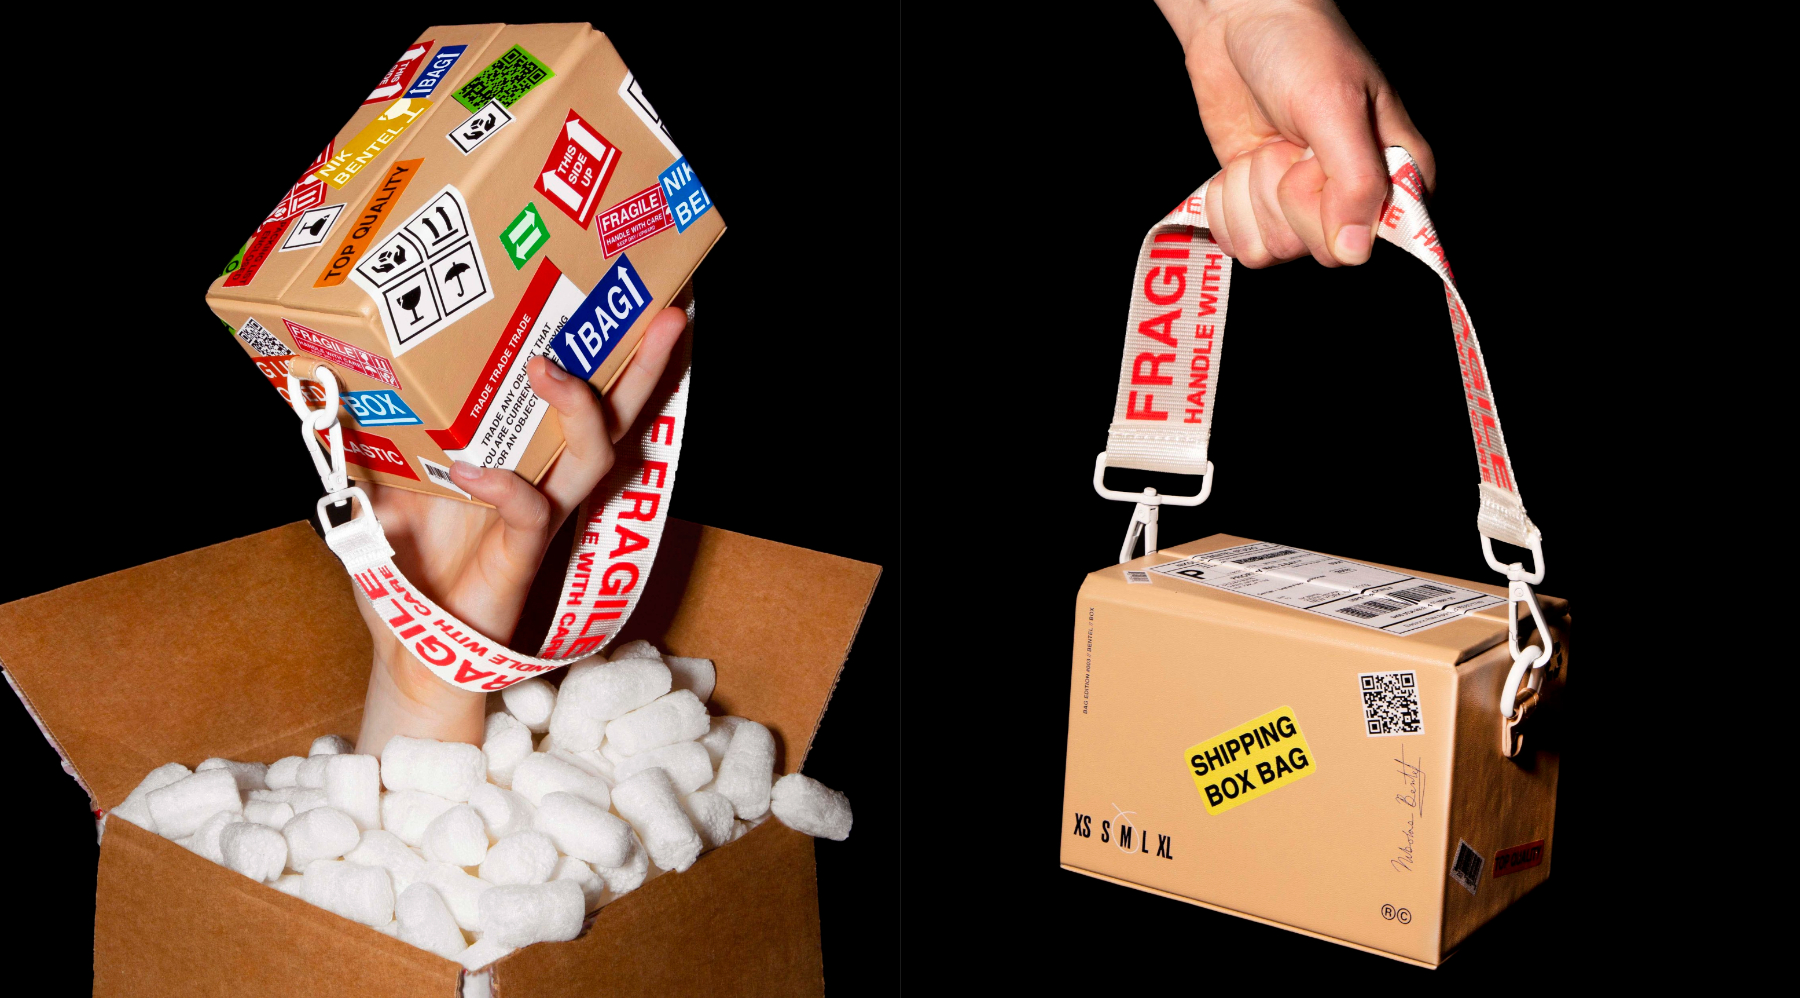 The Shipping Box Bag: Pogledajte najnoviju kreaciju koju je predstavio dizajner Nikolas Bentel